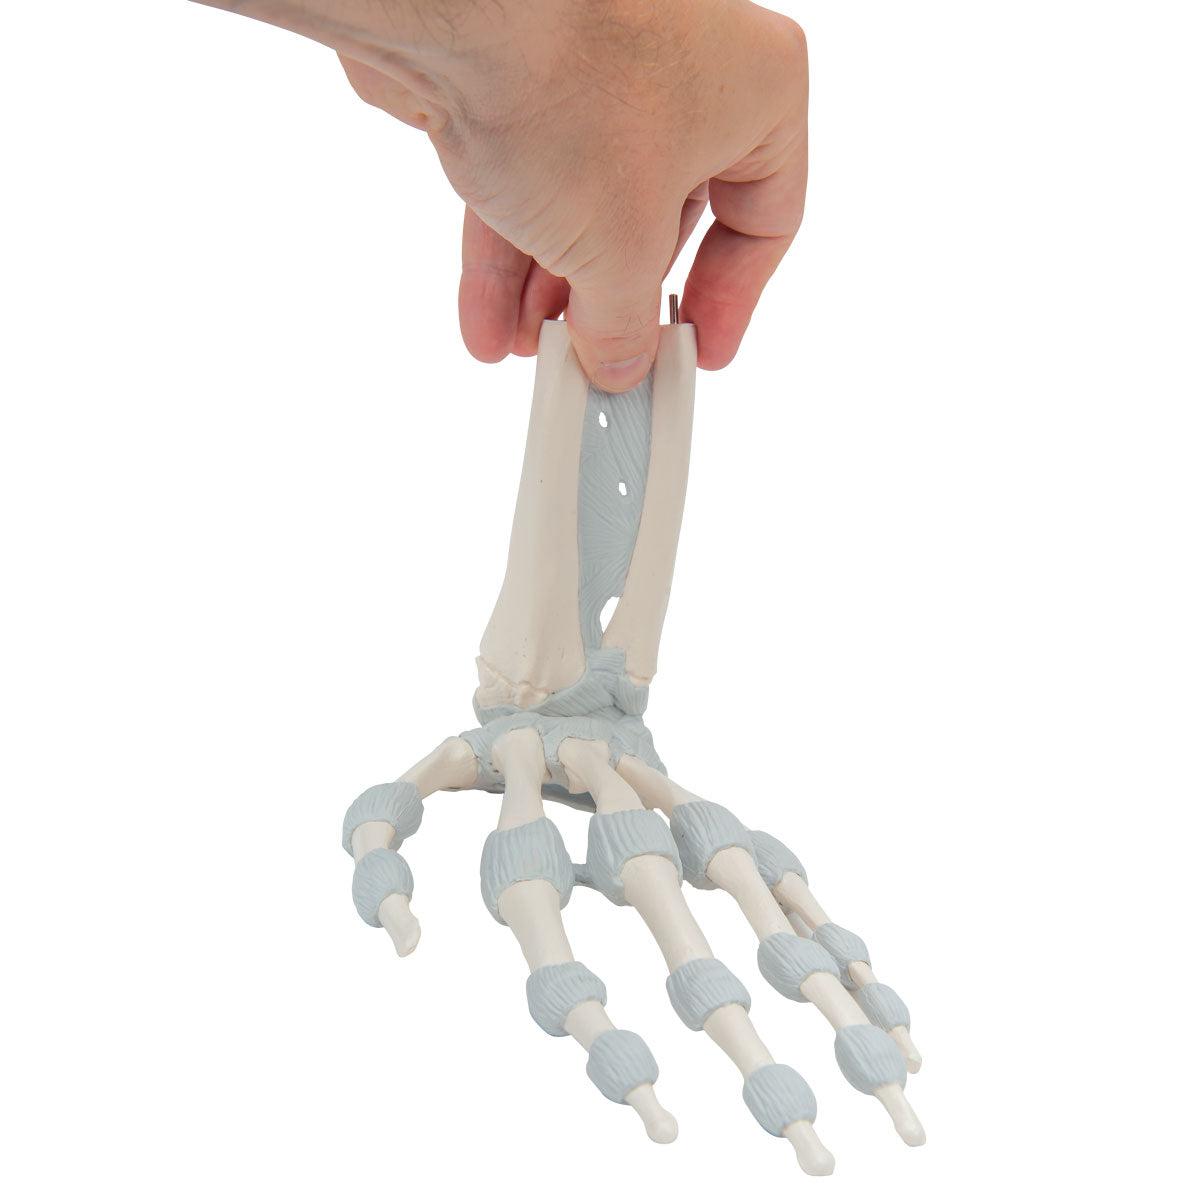 Fleksibel håndmodel med elastiske ledbånd